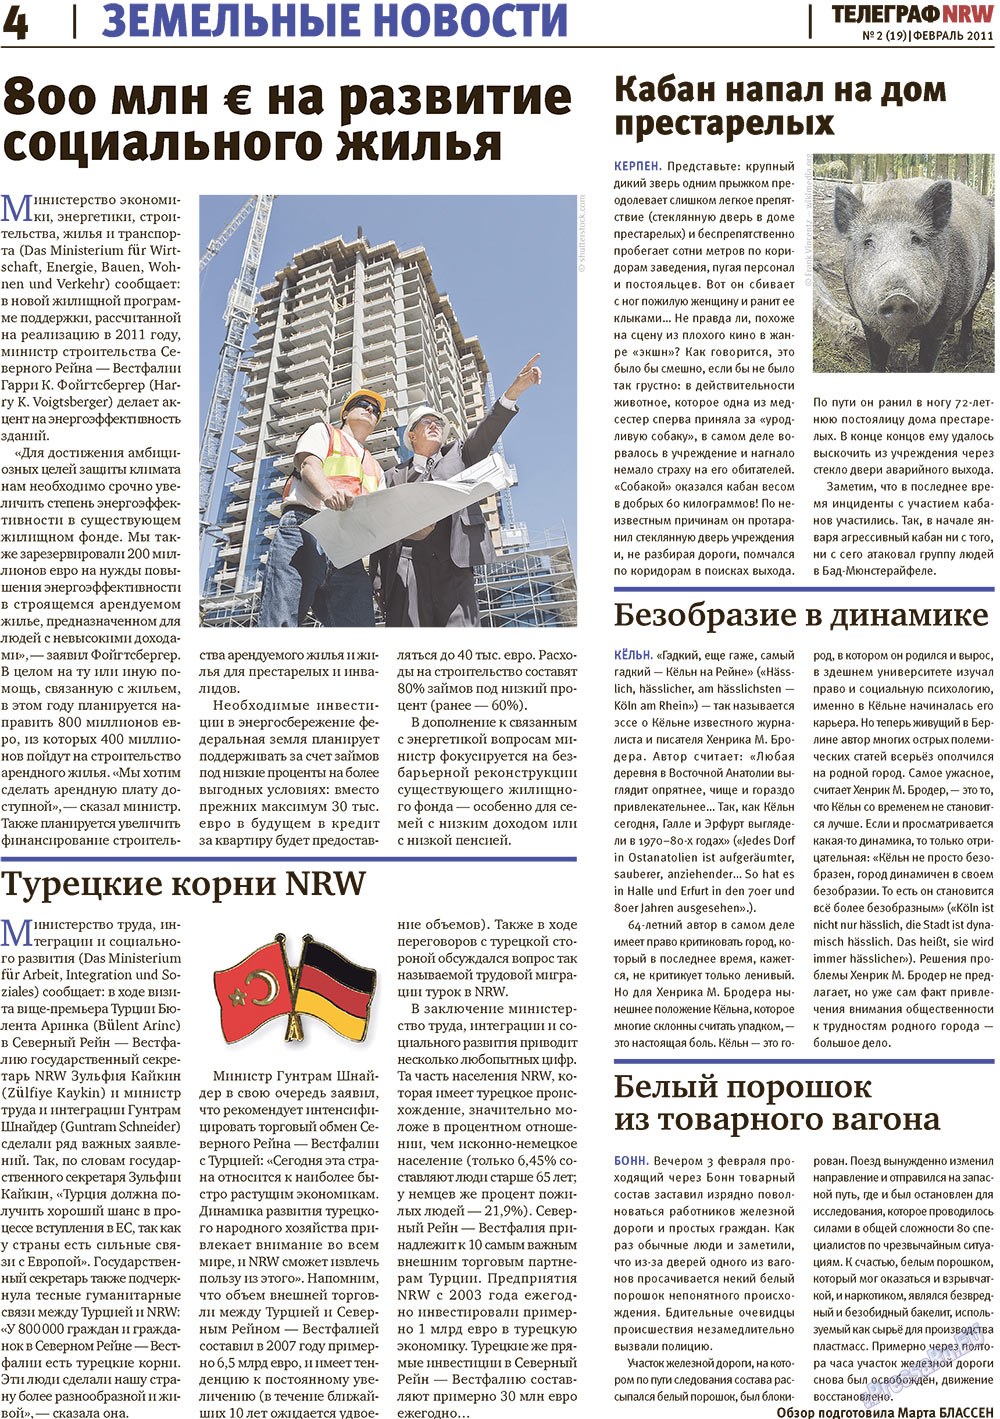 Телеграф NRW (газета). 2011 год, номер 2, стр. 4